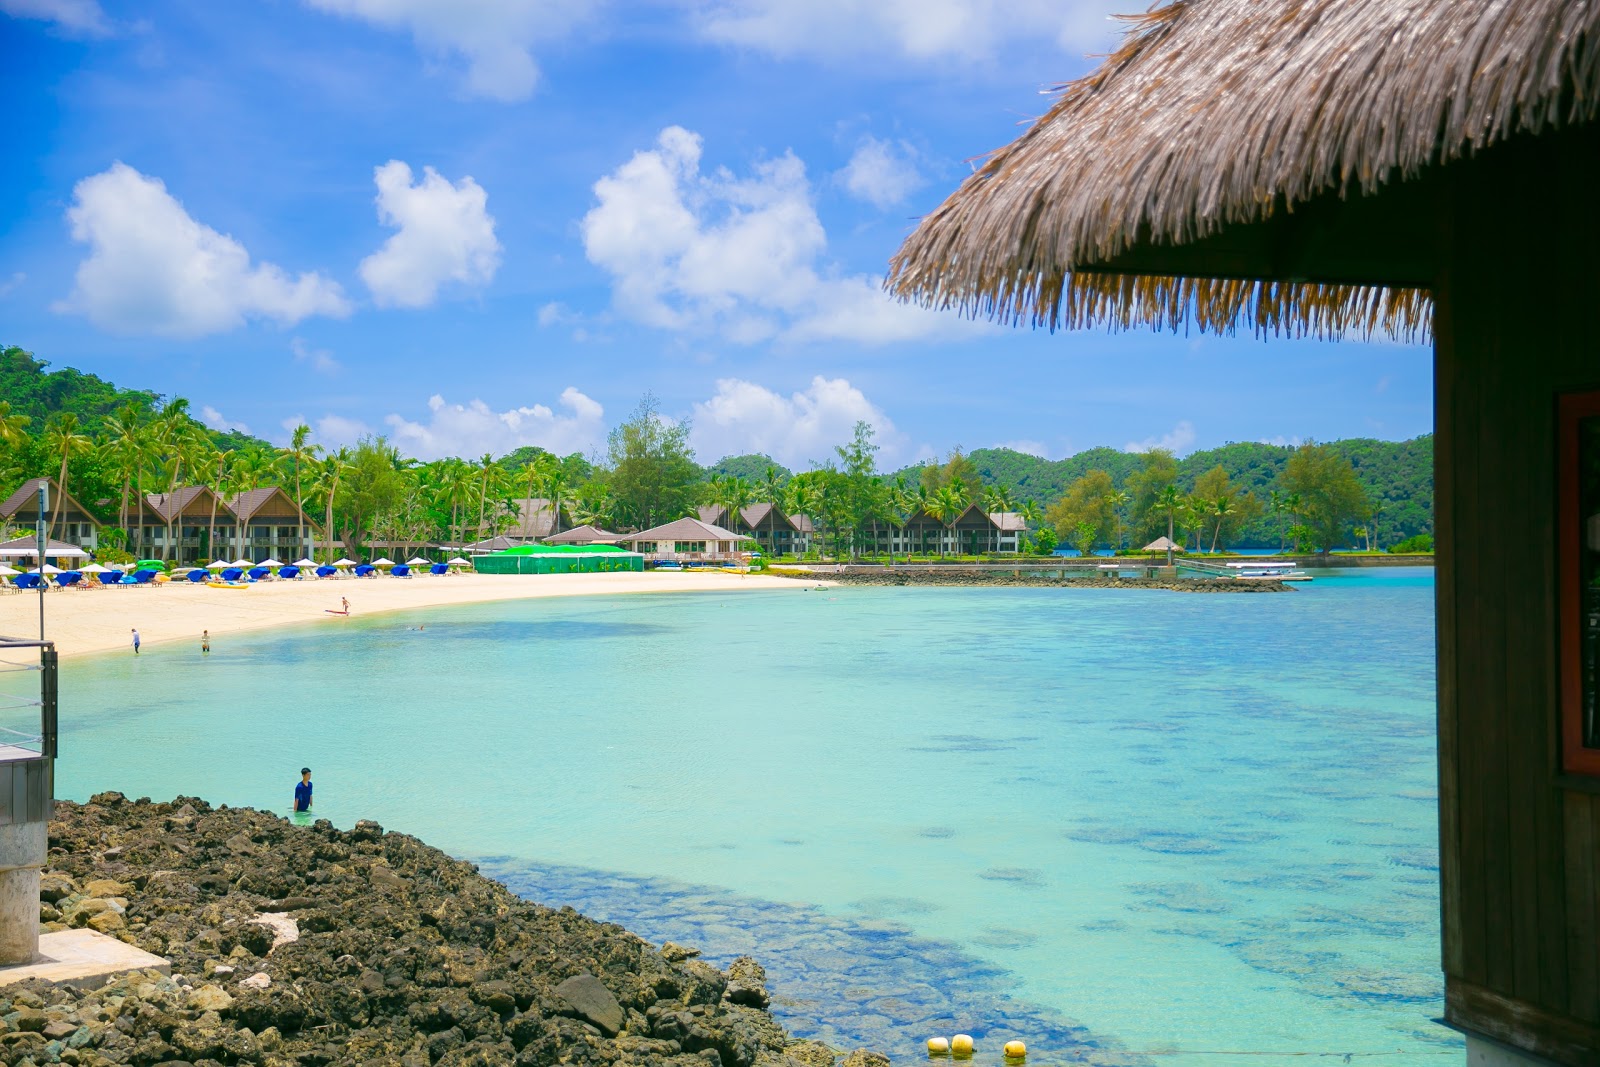 Foto af Palau Pacific Resort med rummelig kyst